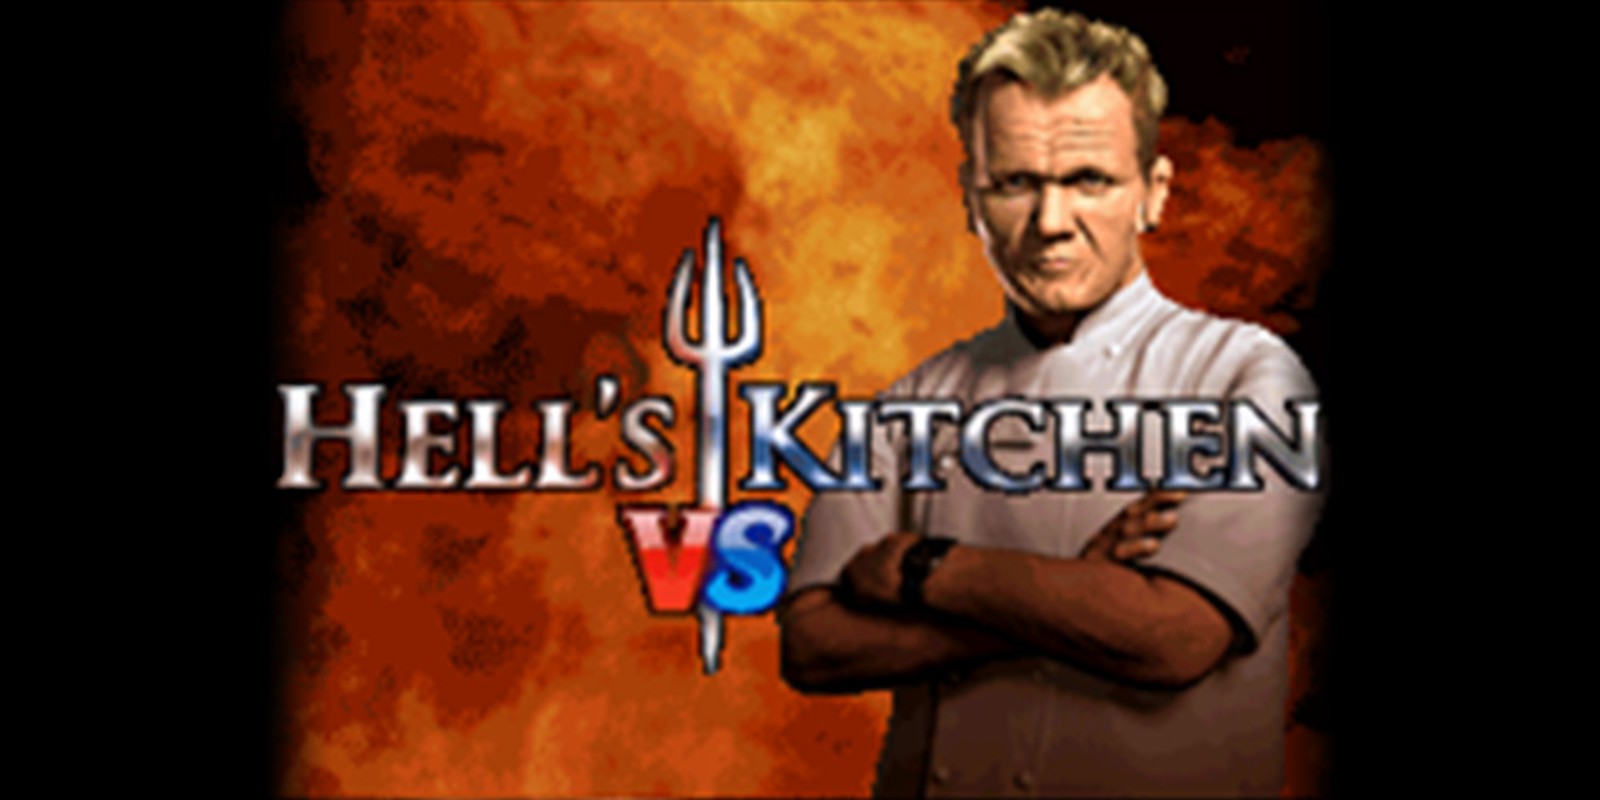 Hell's Kitchen Vs.